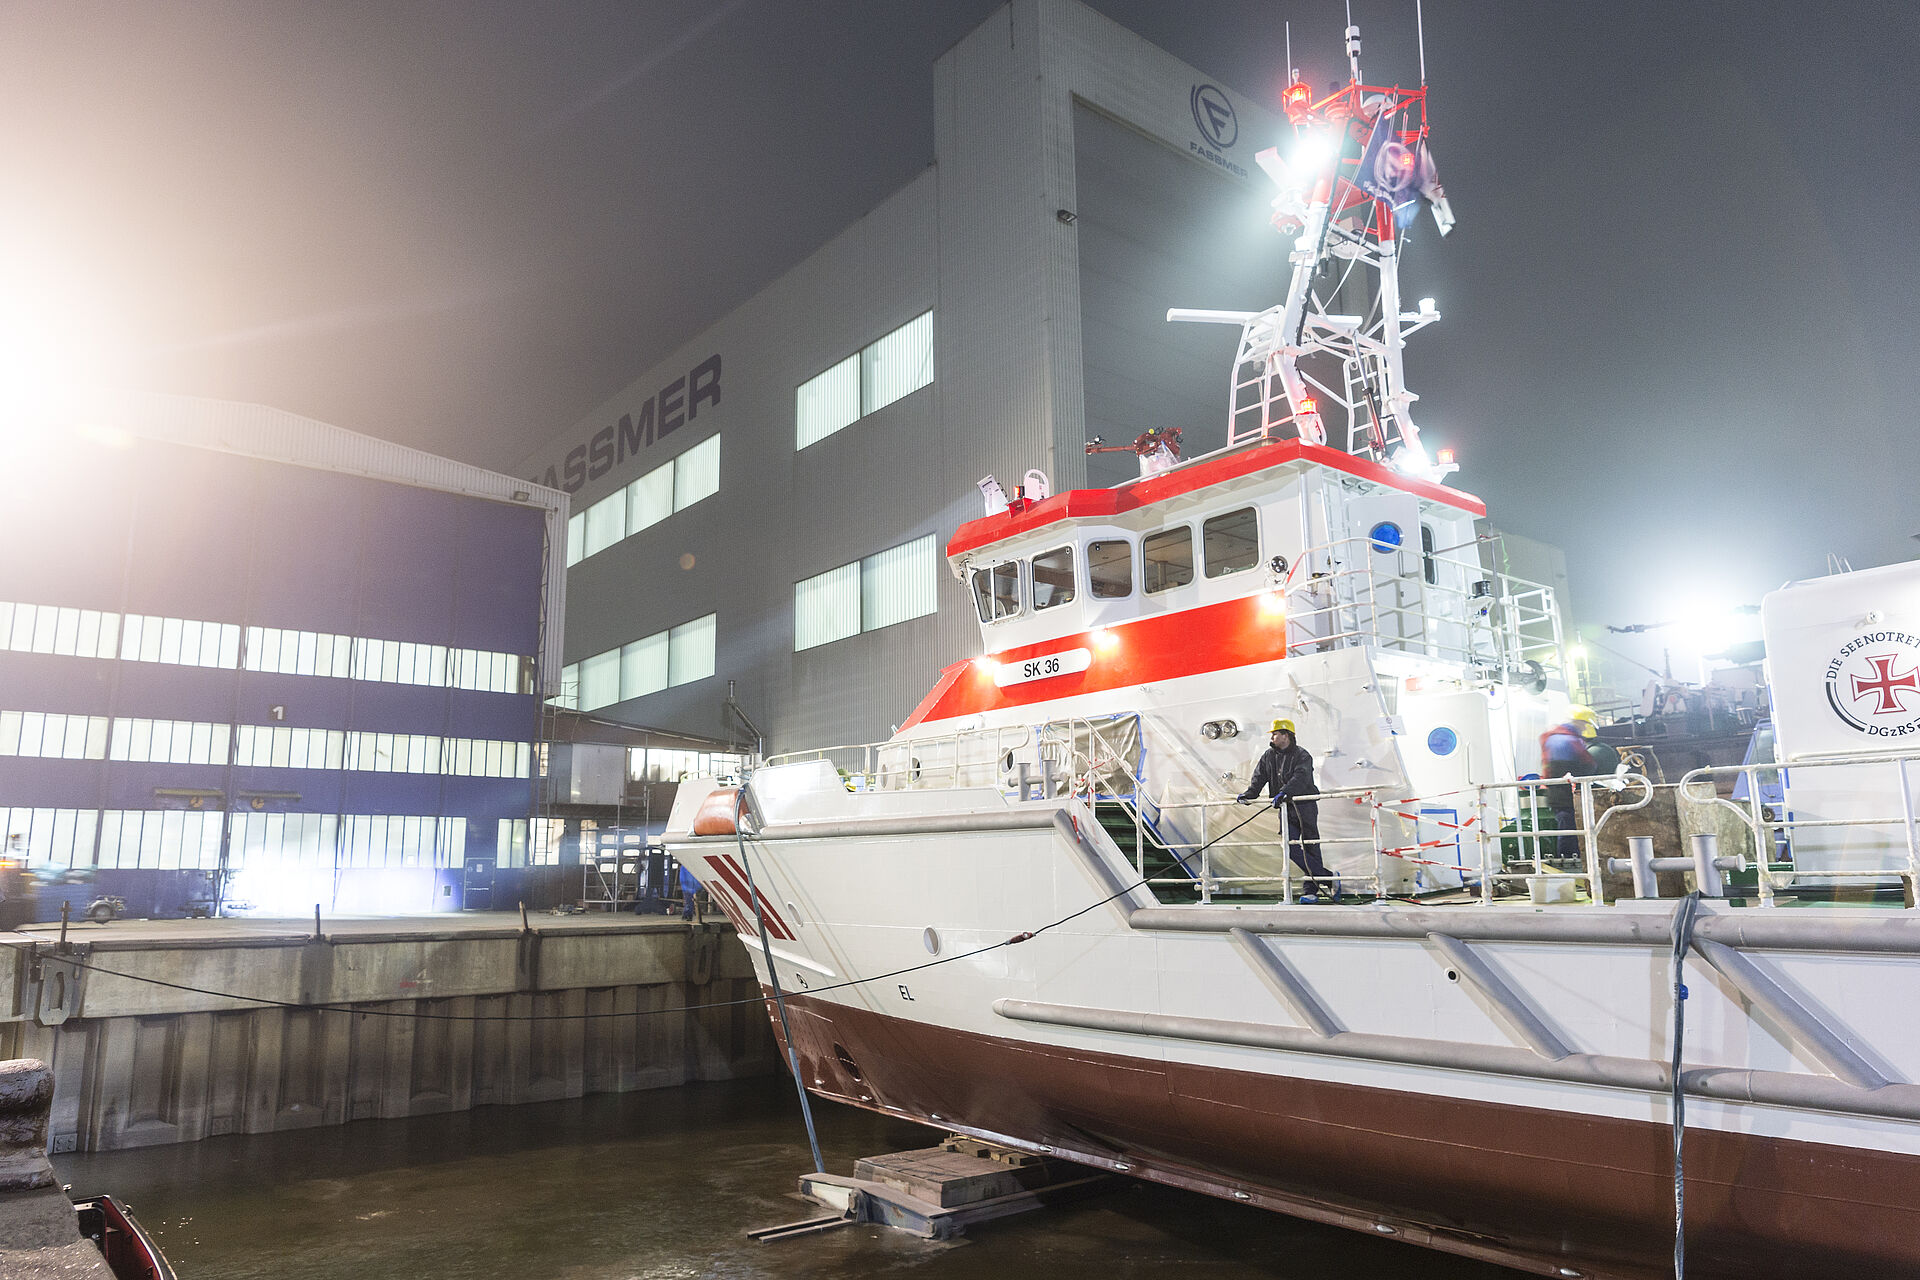 Der Seenotrettungskreuzer BERLIN liegt an einem dunklen Morgen vor der Werfthalle. Scheinwerfer bestrahlen das neue Schiff.